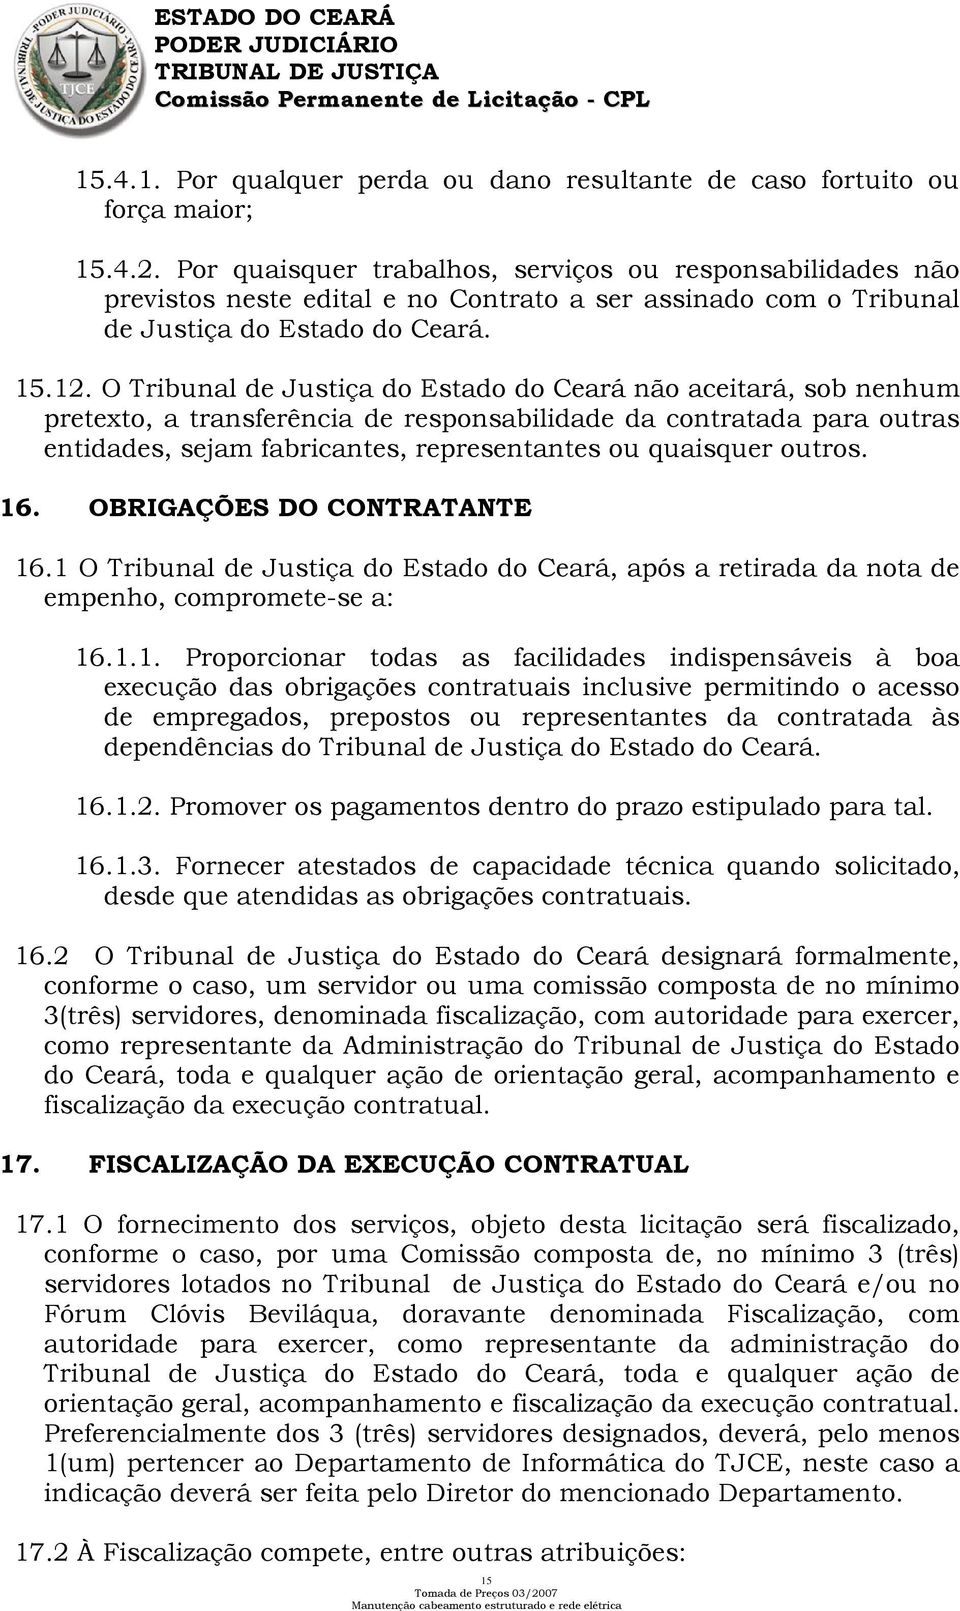 O Tribunal de Justiça do Estado do Ceará não aceitará, sob nenhum pretexto, a transferência de responsabilidade da contratada para outras entidades, sejam fabricantes, representantes ou quaisquer